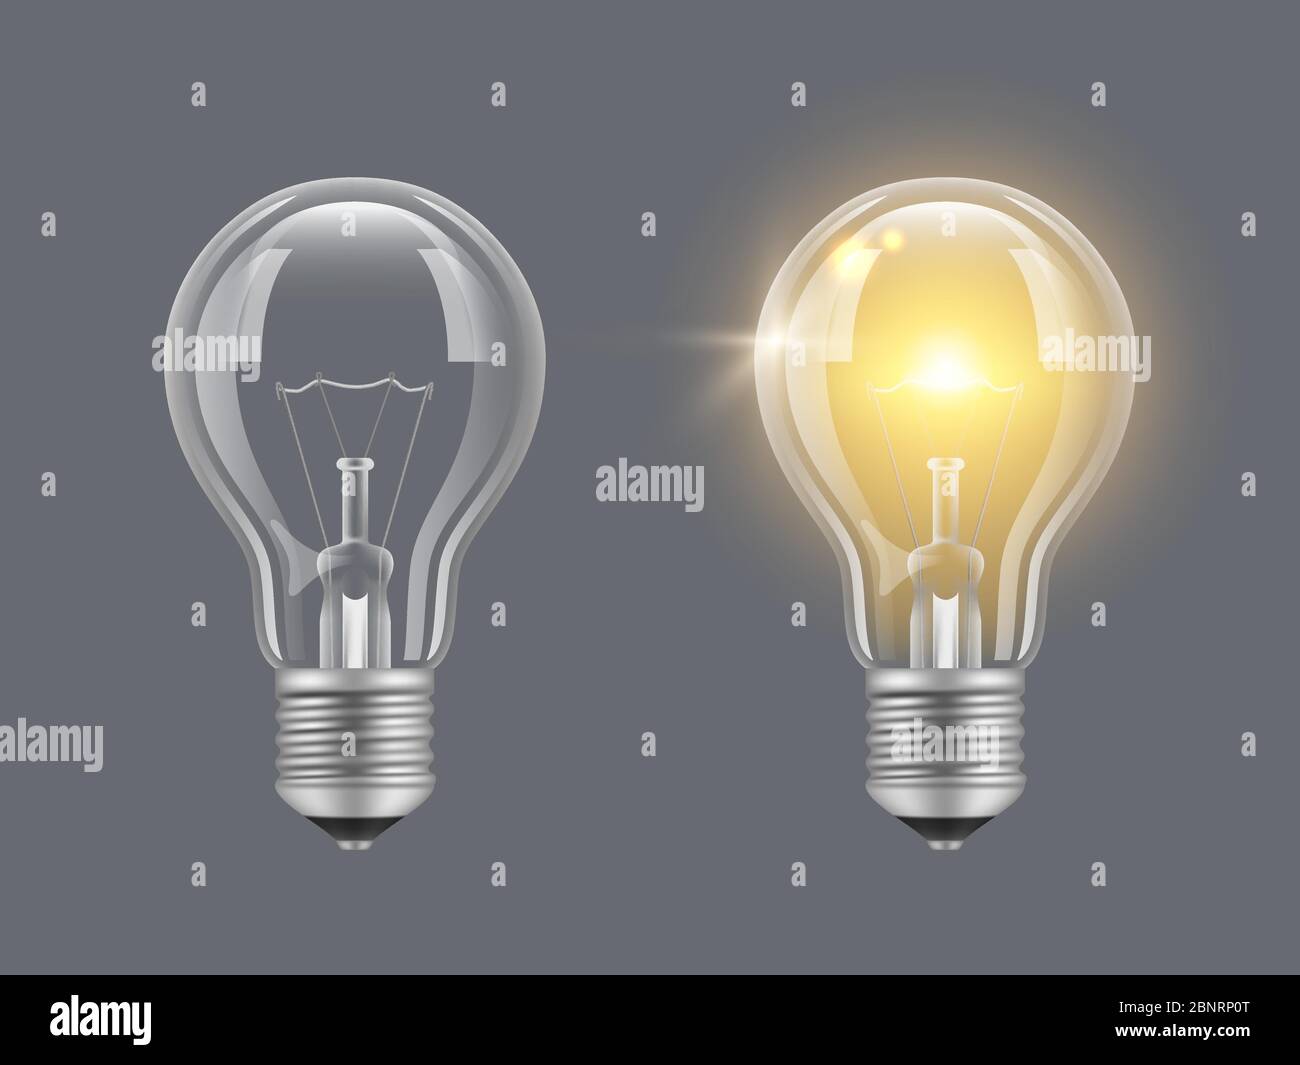 Lampe einschalten. Licht realistische transparente Glühbirne helle Lampe  Vektor Bilder Stock-Vektorgrafik - Alamy